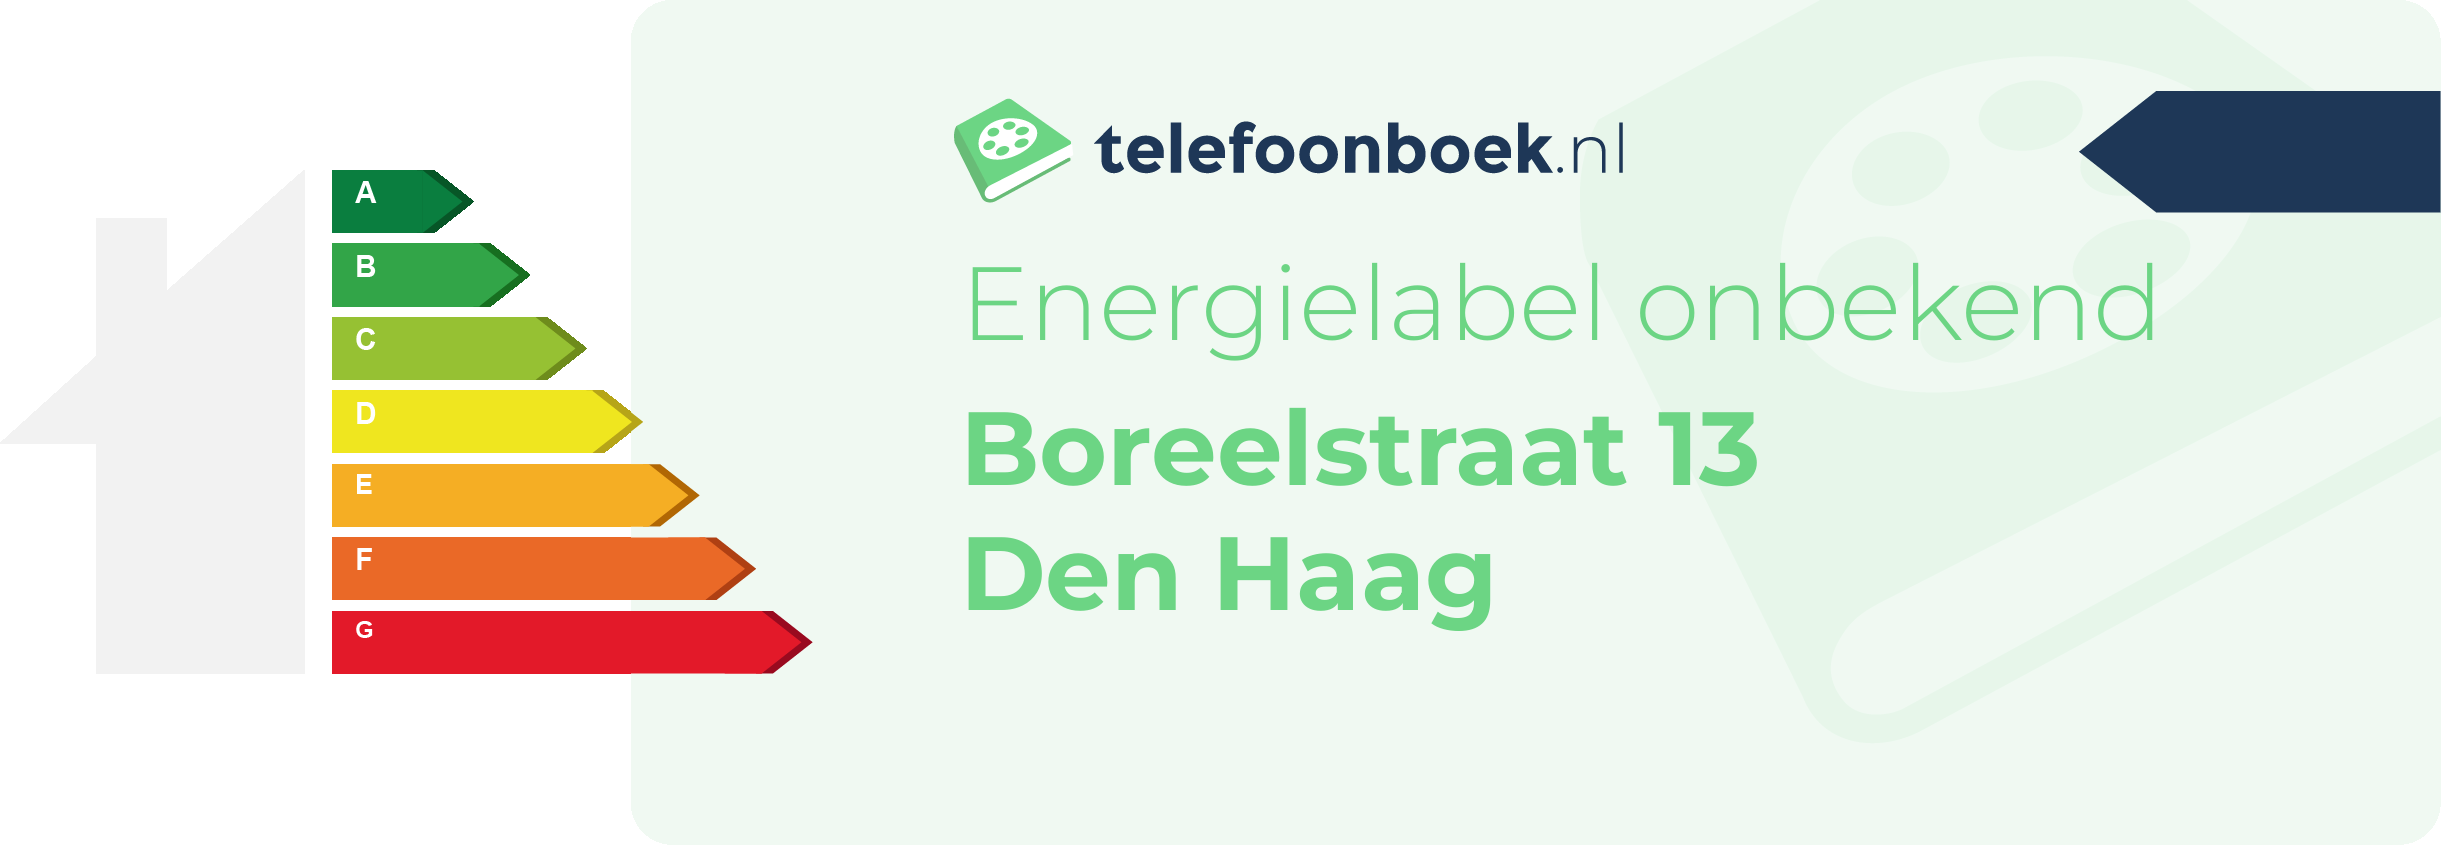 Energielabel Boreelstraat 13 Den Haag